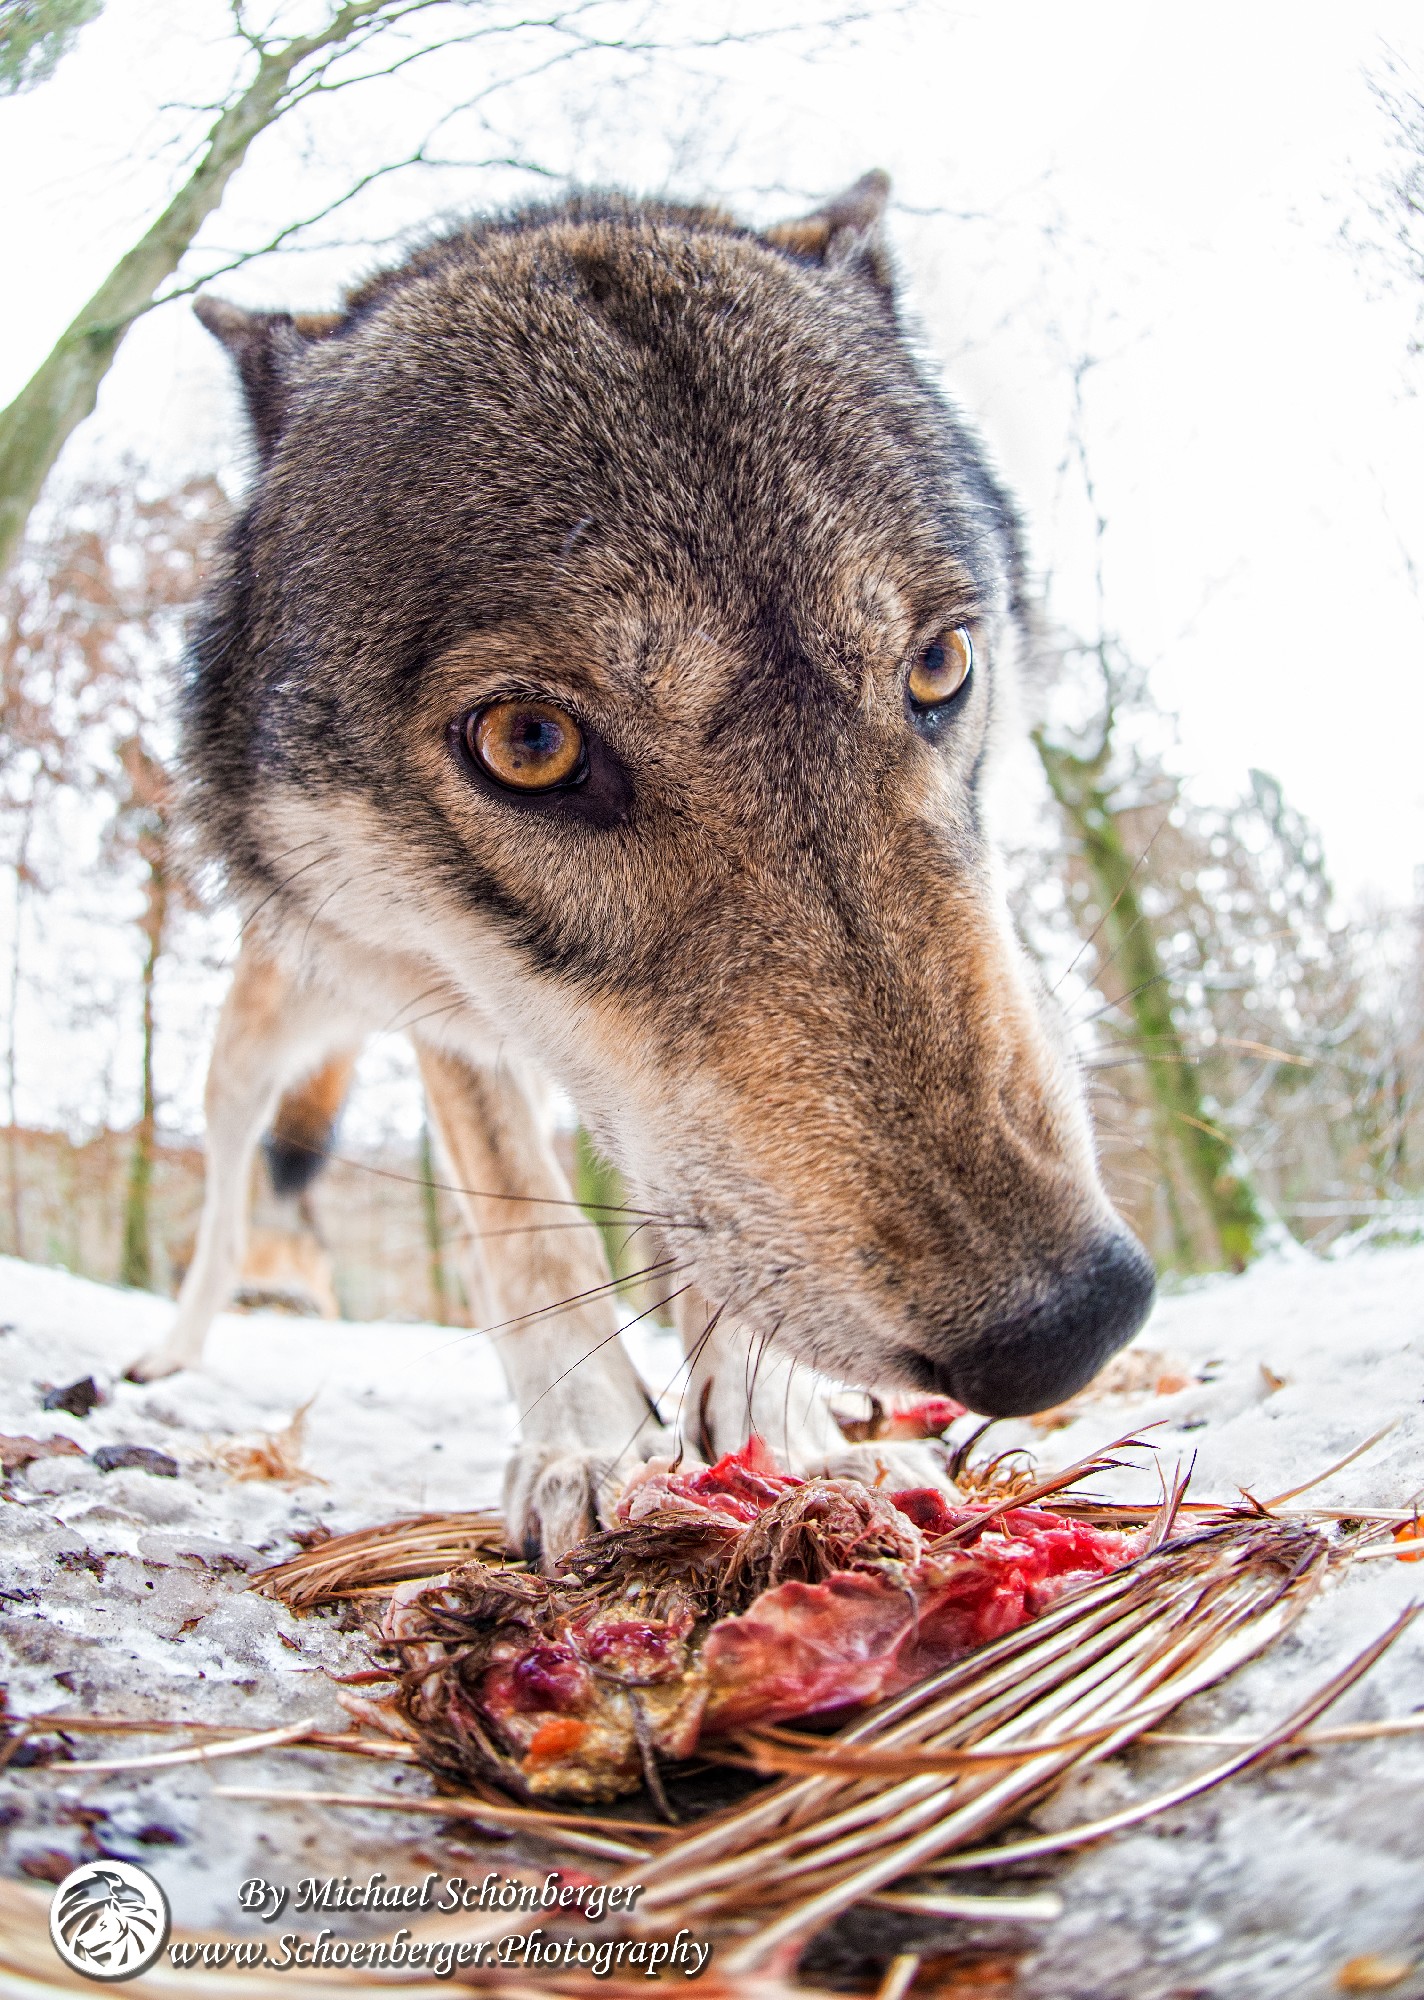 Wolfsfoto - Fotograf Michael Schönberger - Schoenberger.Photography